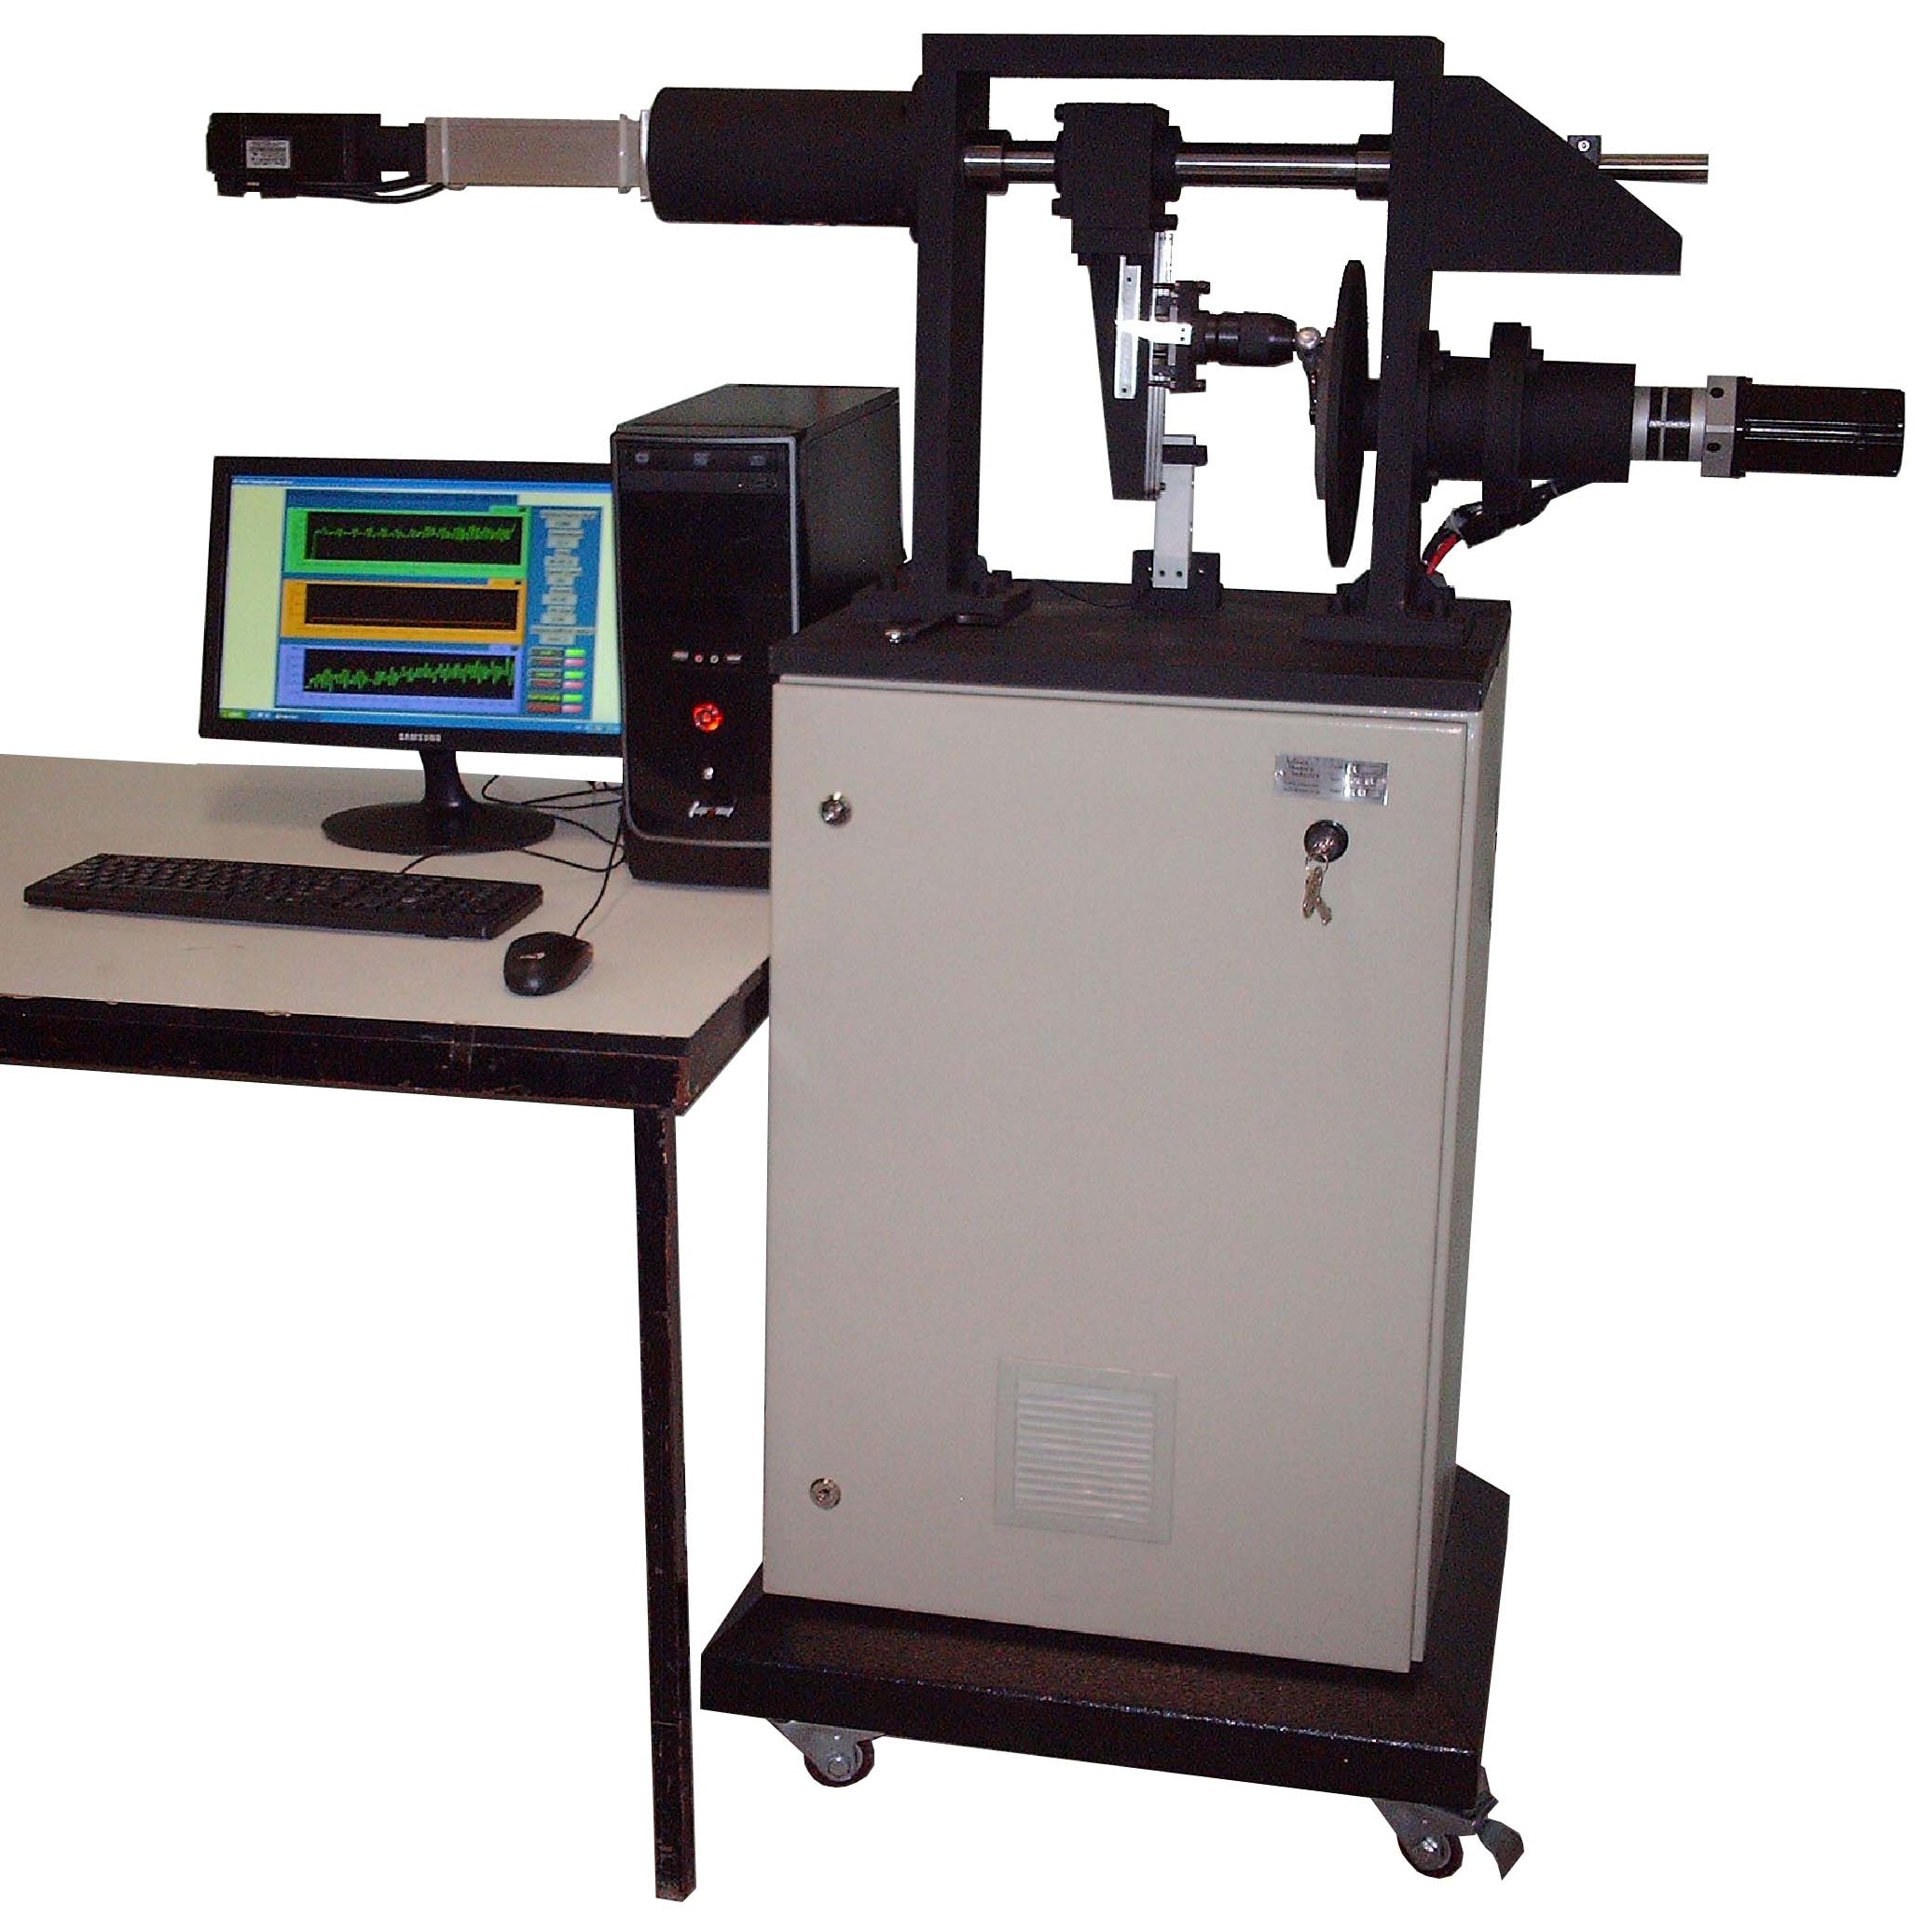 دستگاه تست سایش پیشرفته همراه سیستمهای اندازه گیری نرخ سایش و کنترل نیروی عمودی